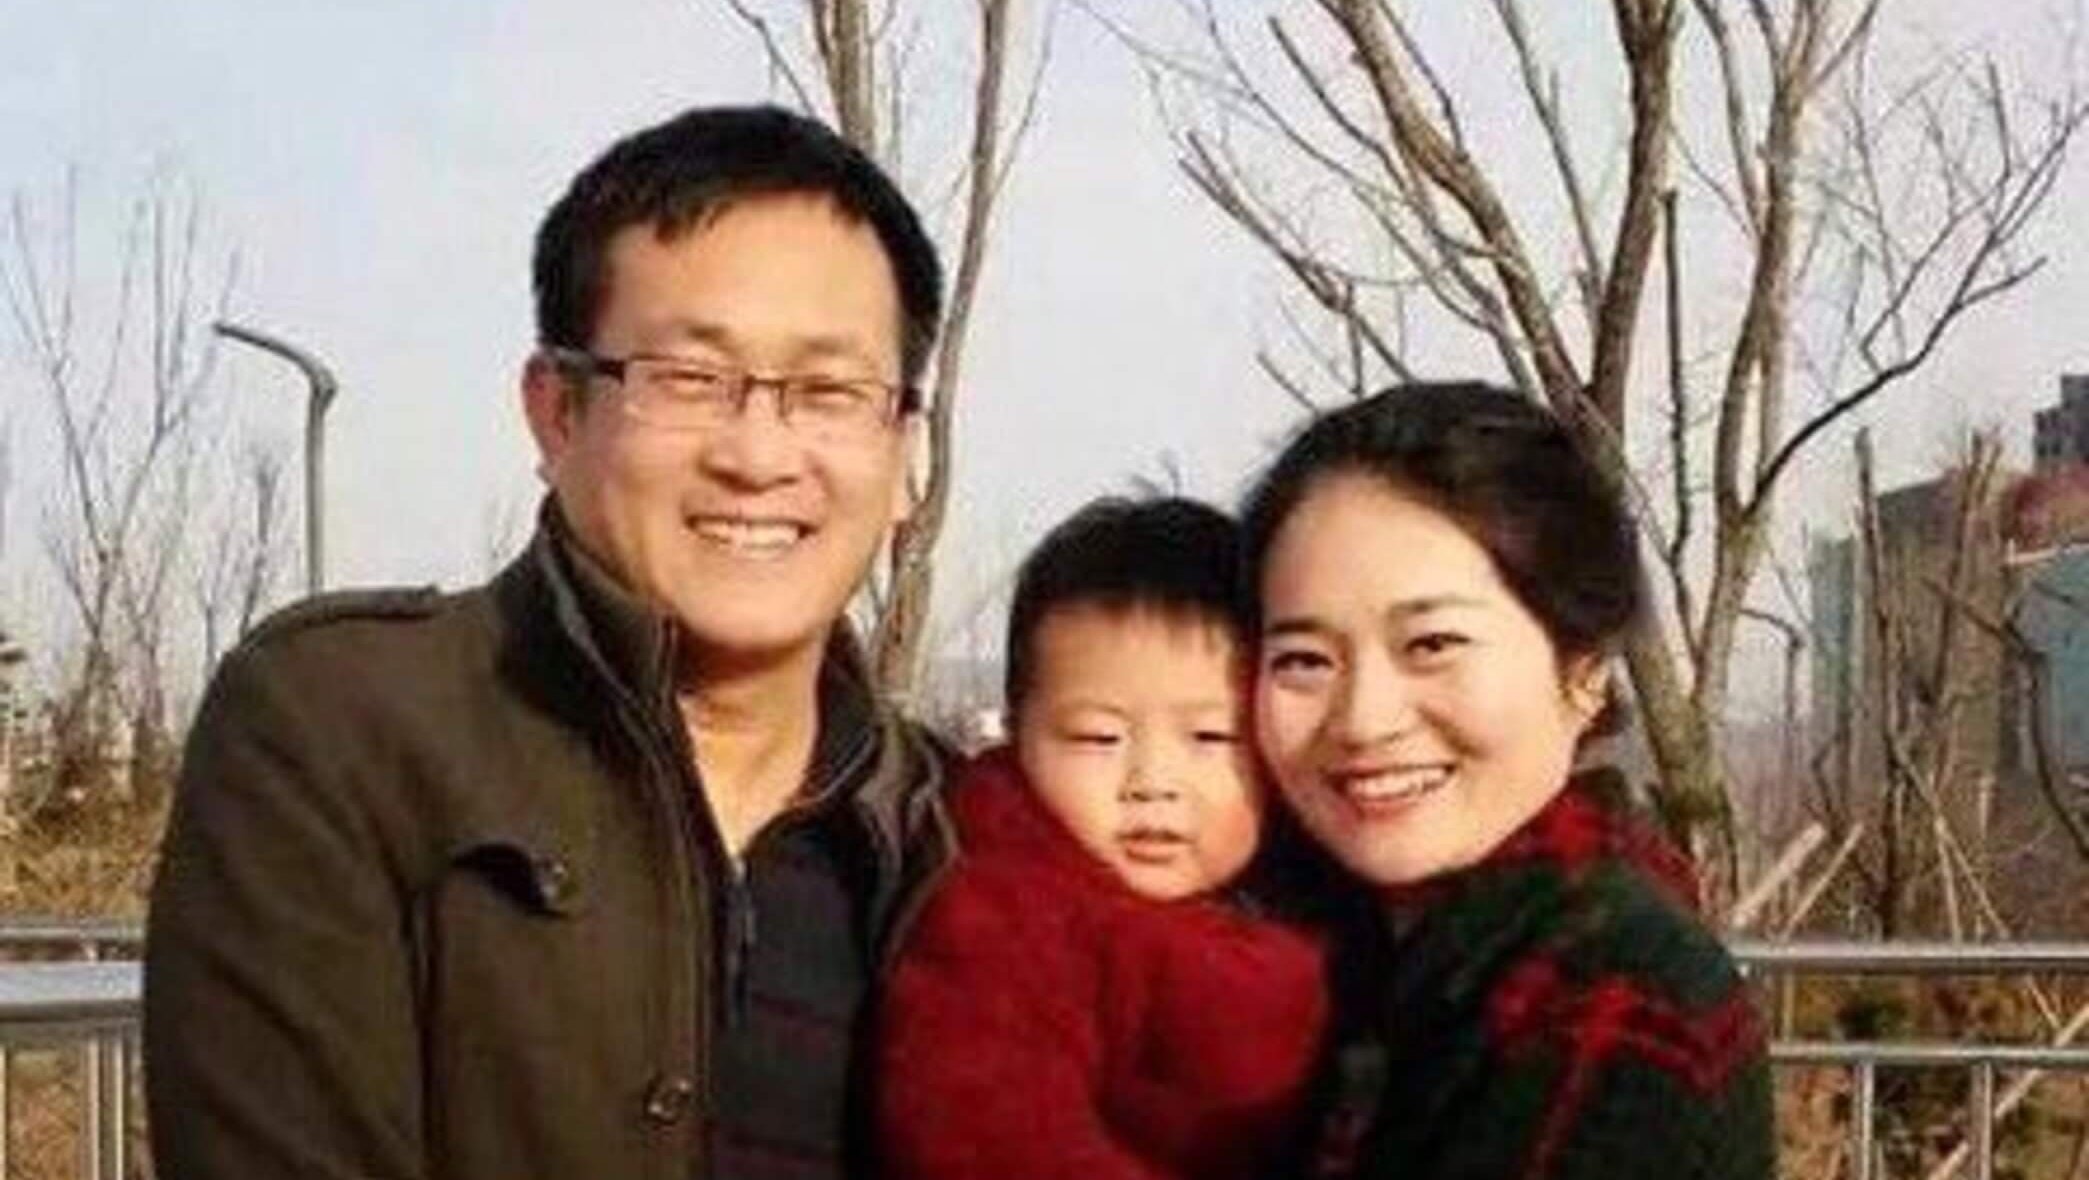 Wang Quanzhang a été placé en garde à vue le 3 août 2015 après être entré dans la clandestinité à la suite de la répression des avocats à partir du 9 juillet . Il a été officiellement arrêté le 8 janvier 2016, soupçonné de "subversion du pouvoir de l'État". Depuis le 12 juin 2017, il est détenu au centre de détention municipal n°2 de Tianjin, sans accès à sa famille ni à l'avocat de son choix.